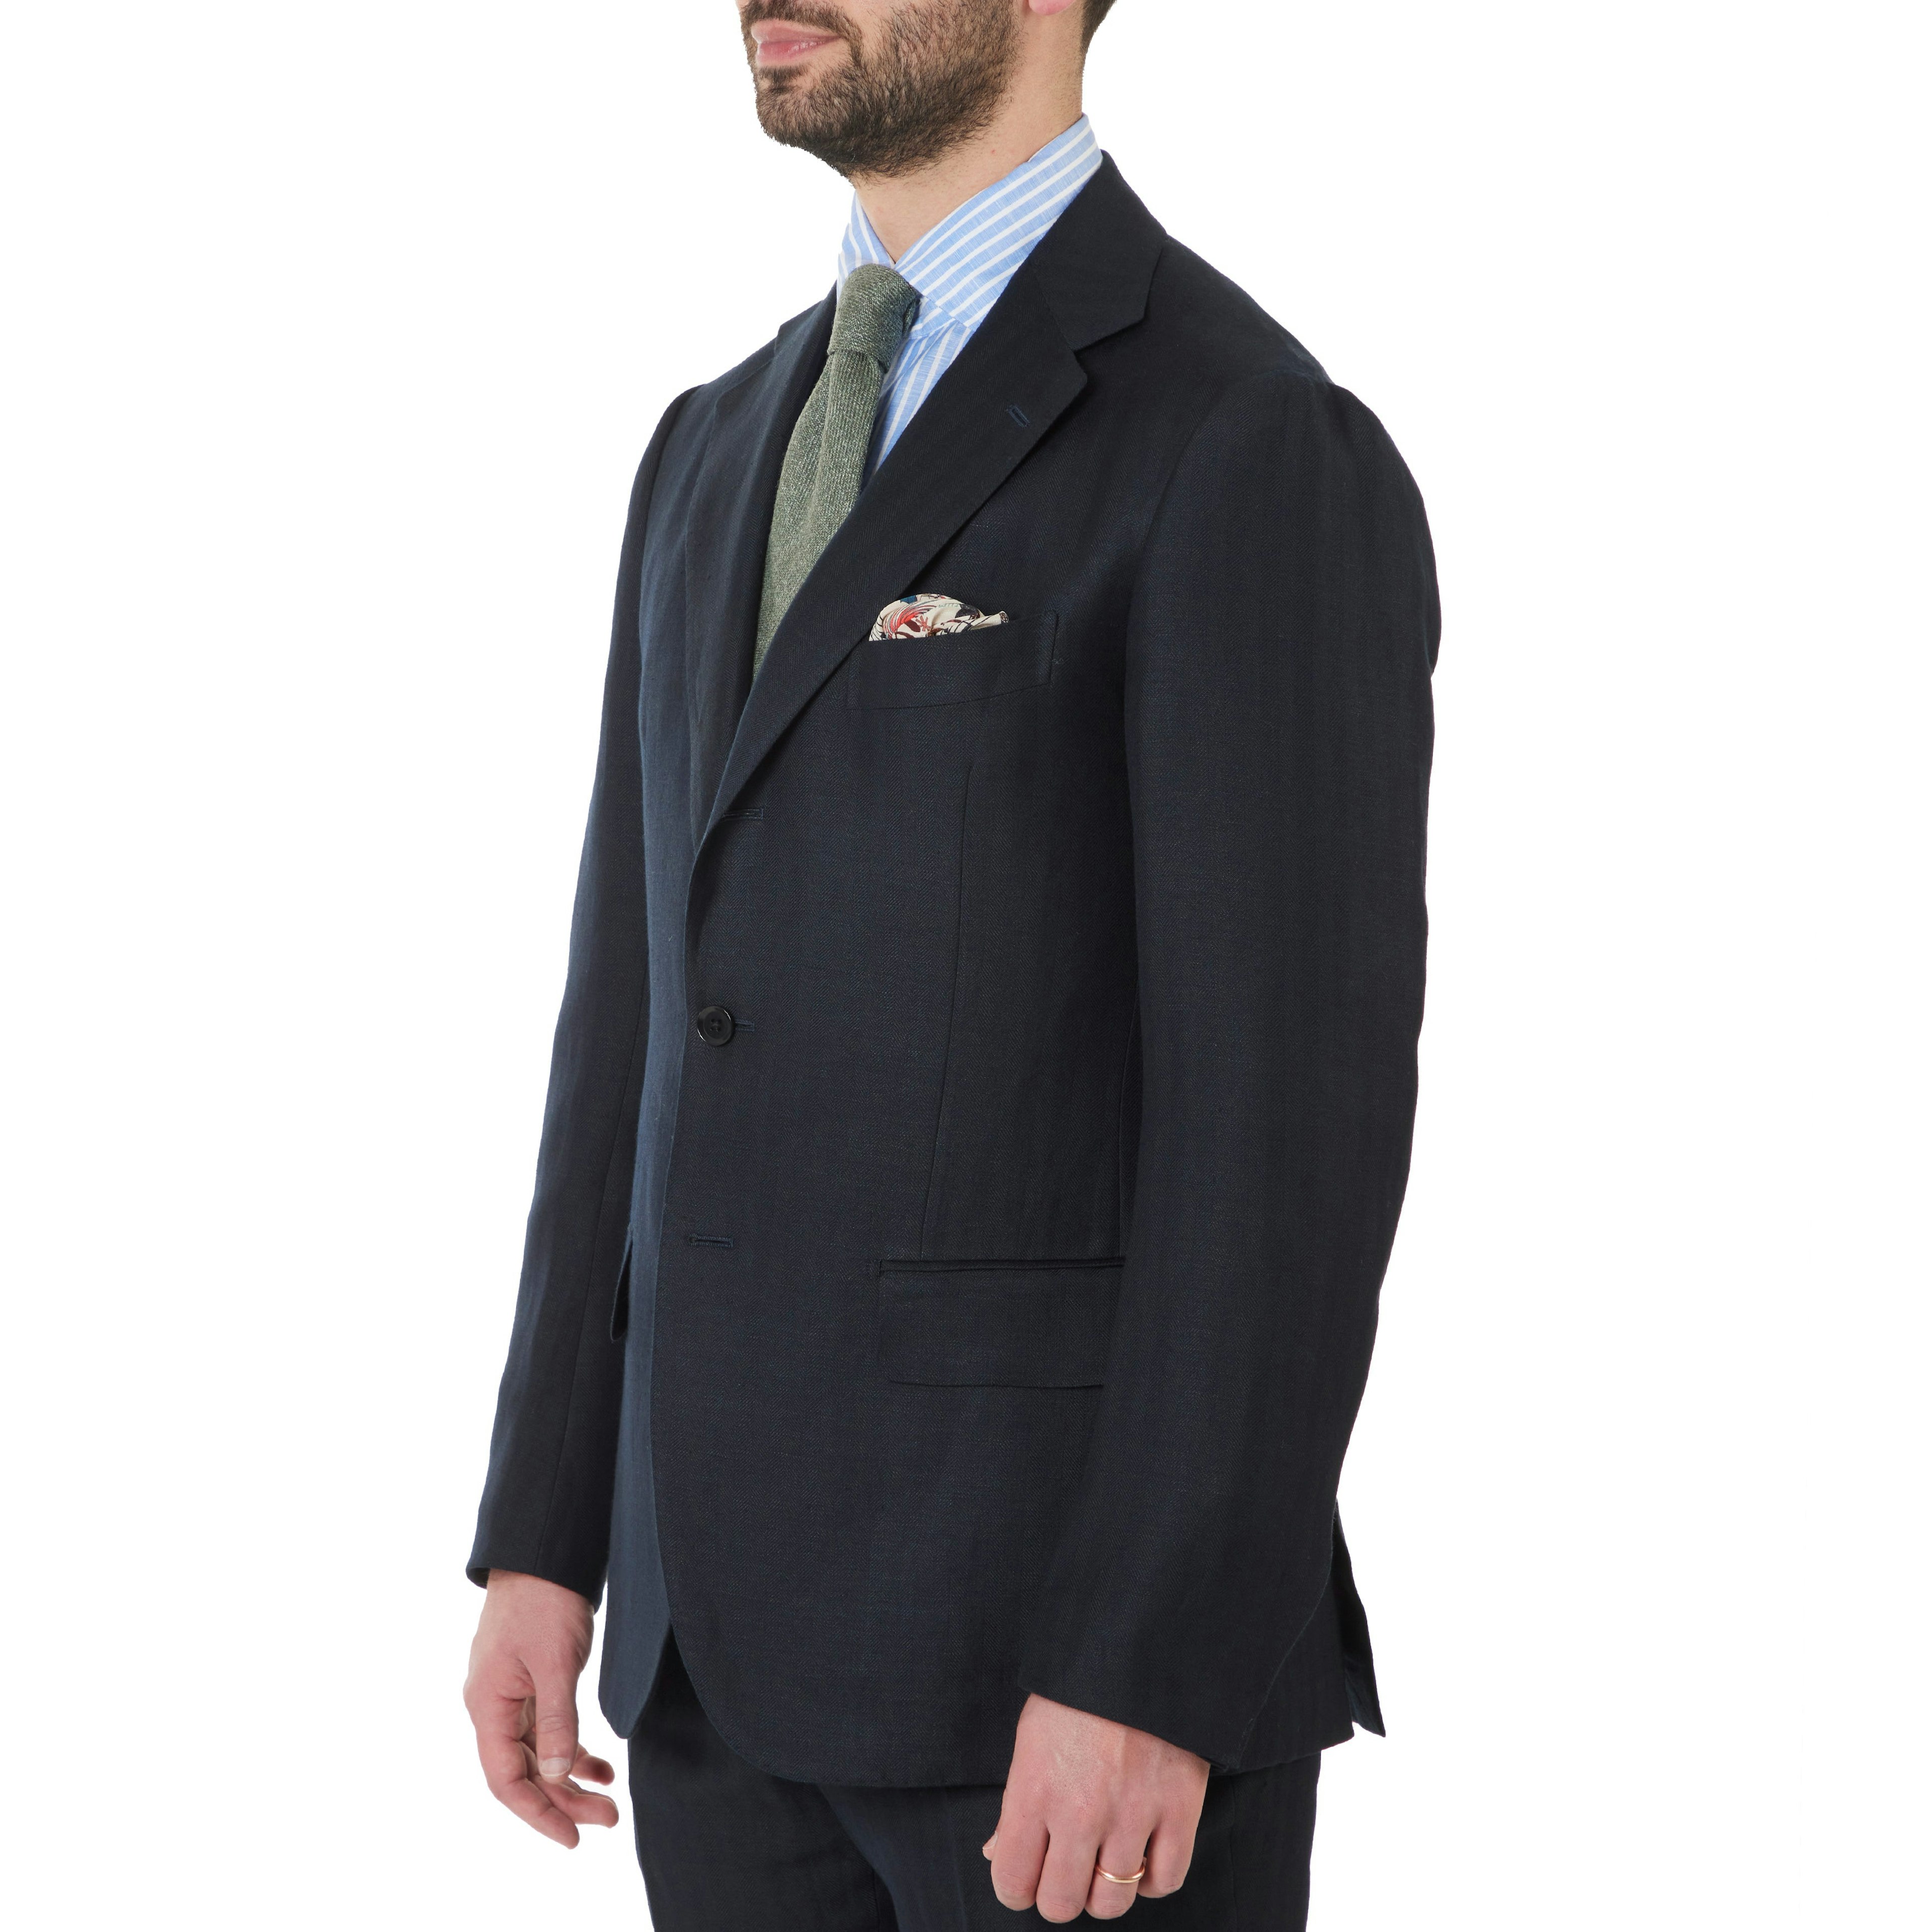 Beige Herringbone Linen Tailored Italian Suit Jacket - 1913 Collection